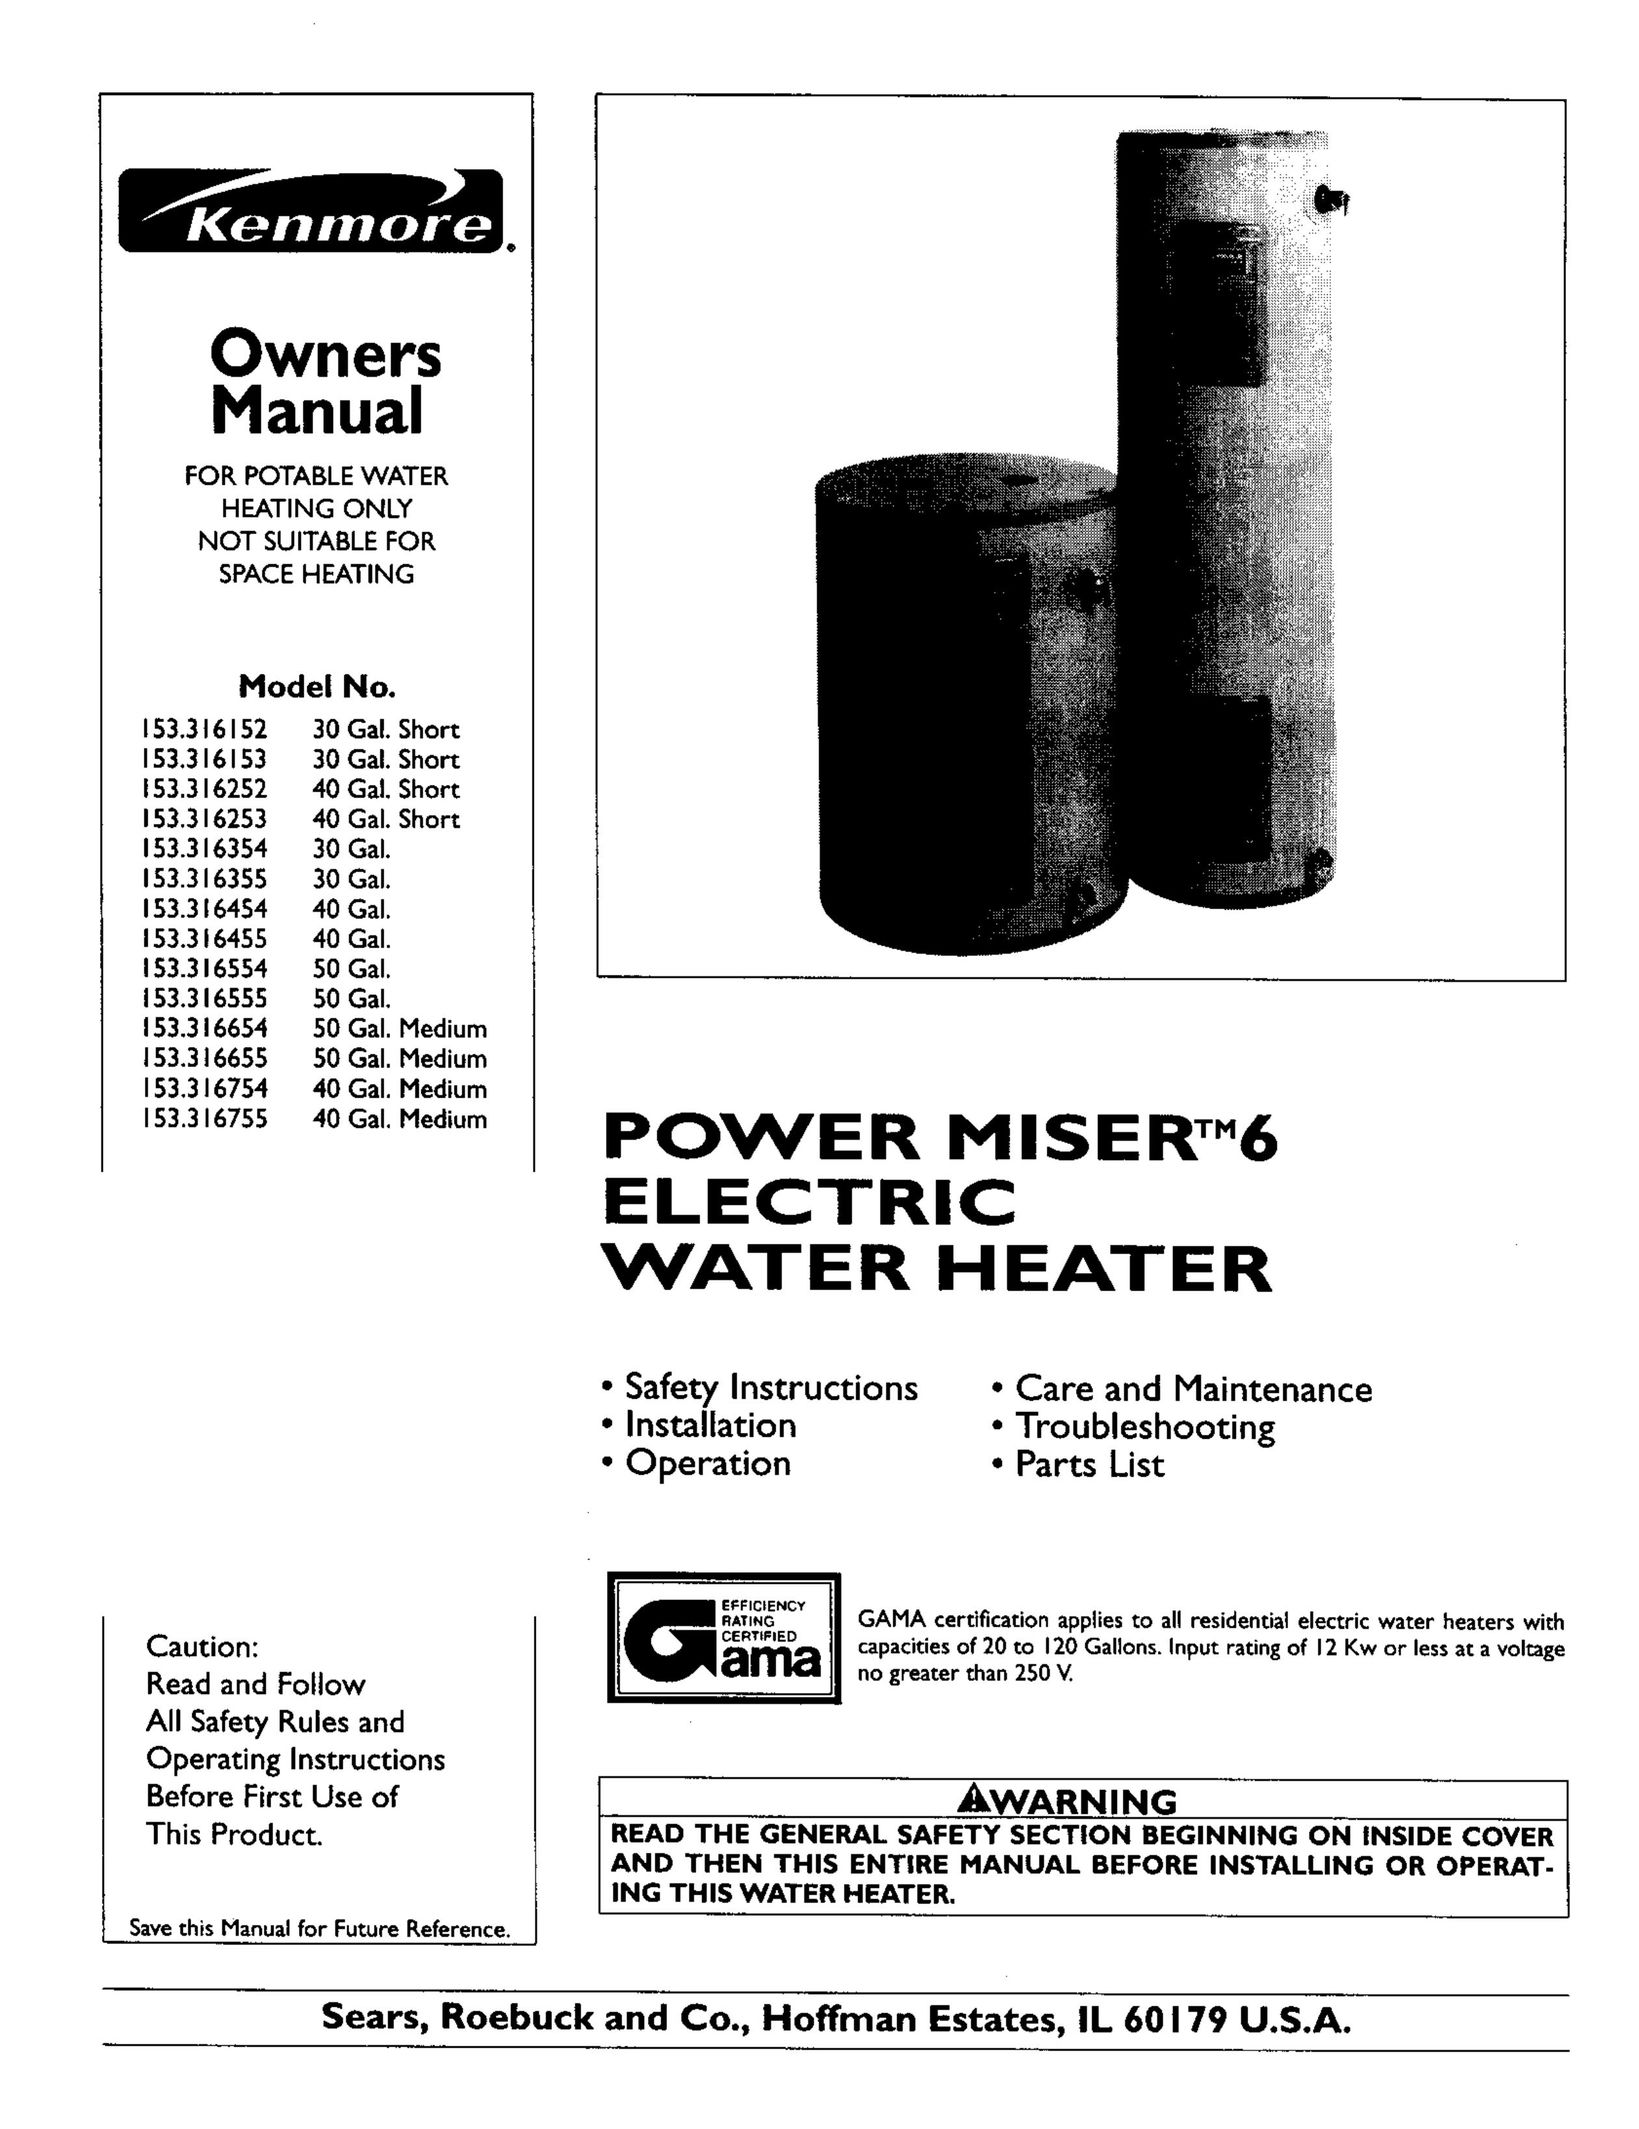 Kenmore 153.316754 Water Heater User Manual